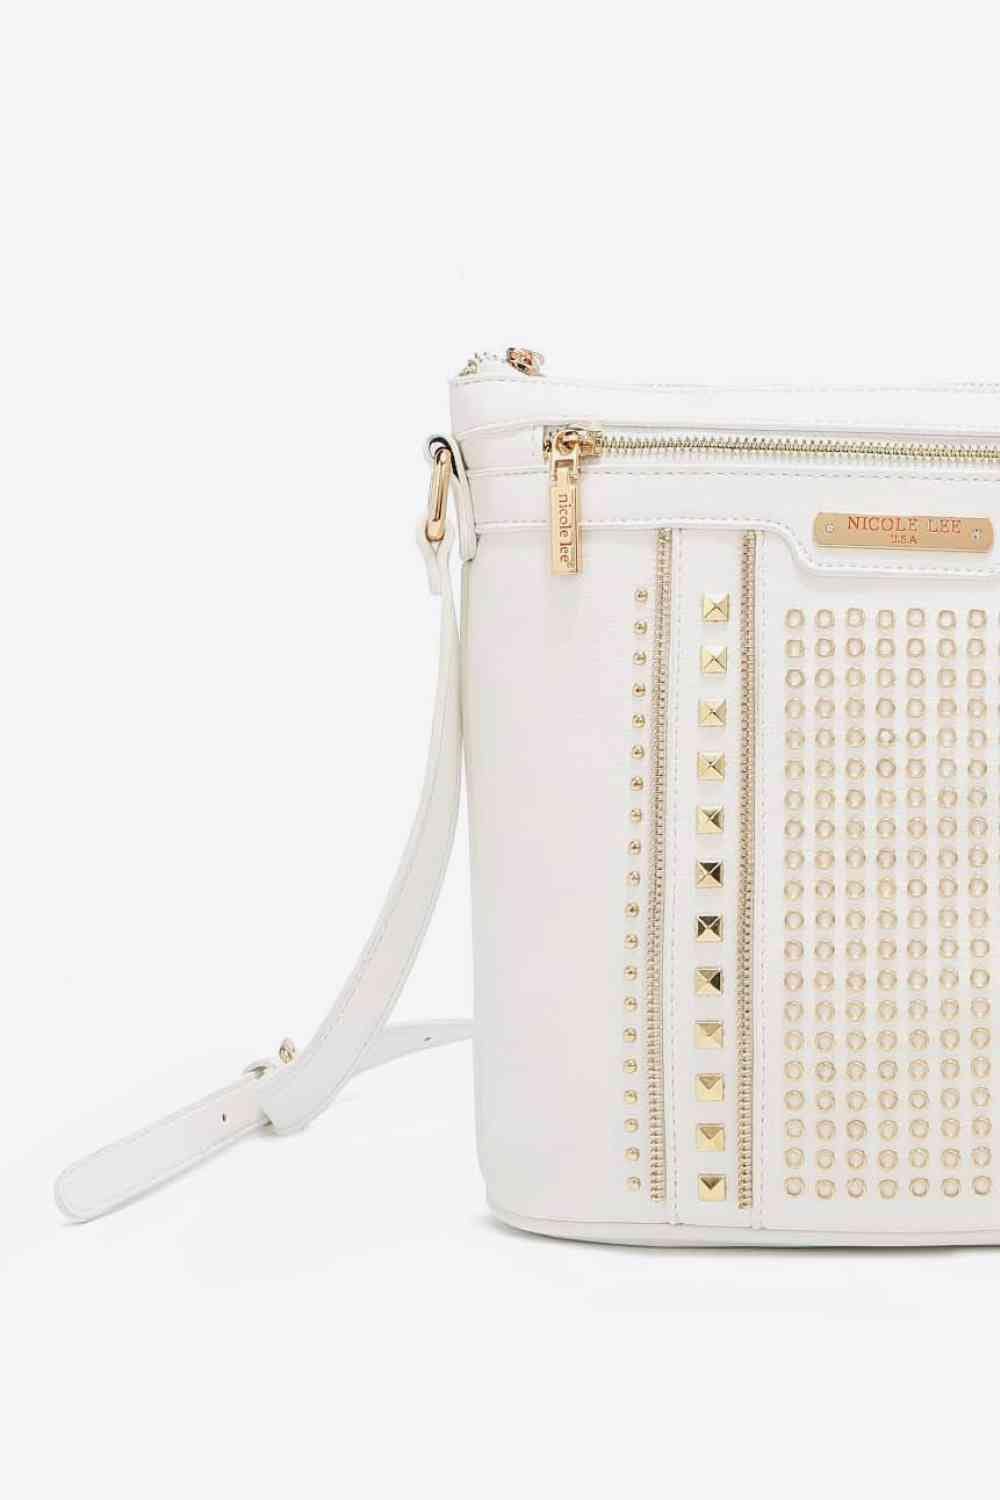 The802Gypsy Handbags, Wallets & Cases GYPSY-Nicole Lee USA-Handbag